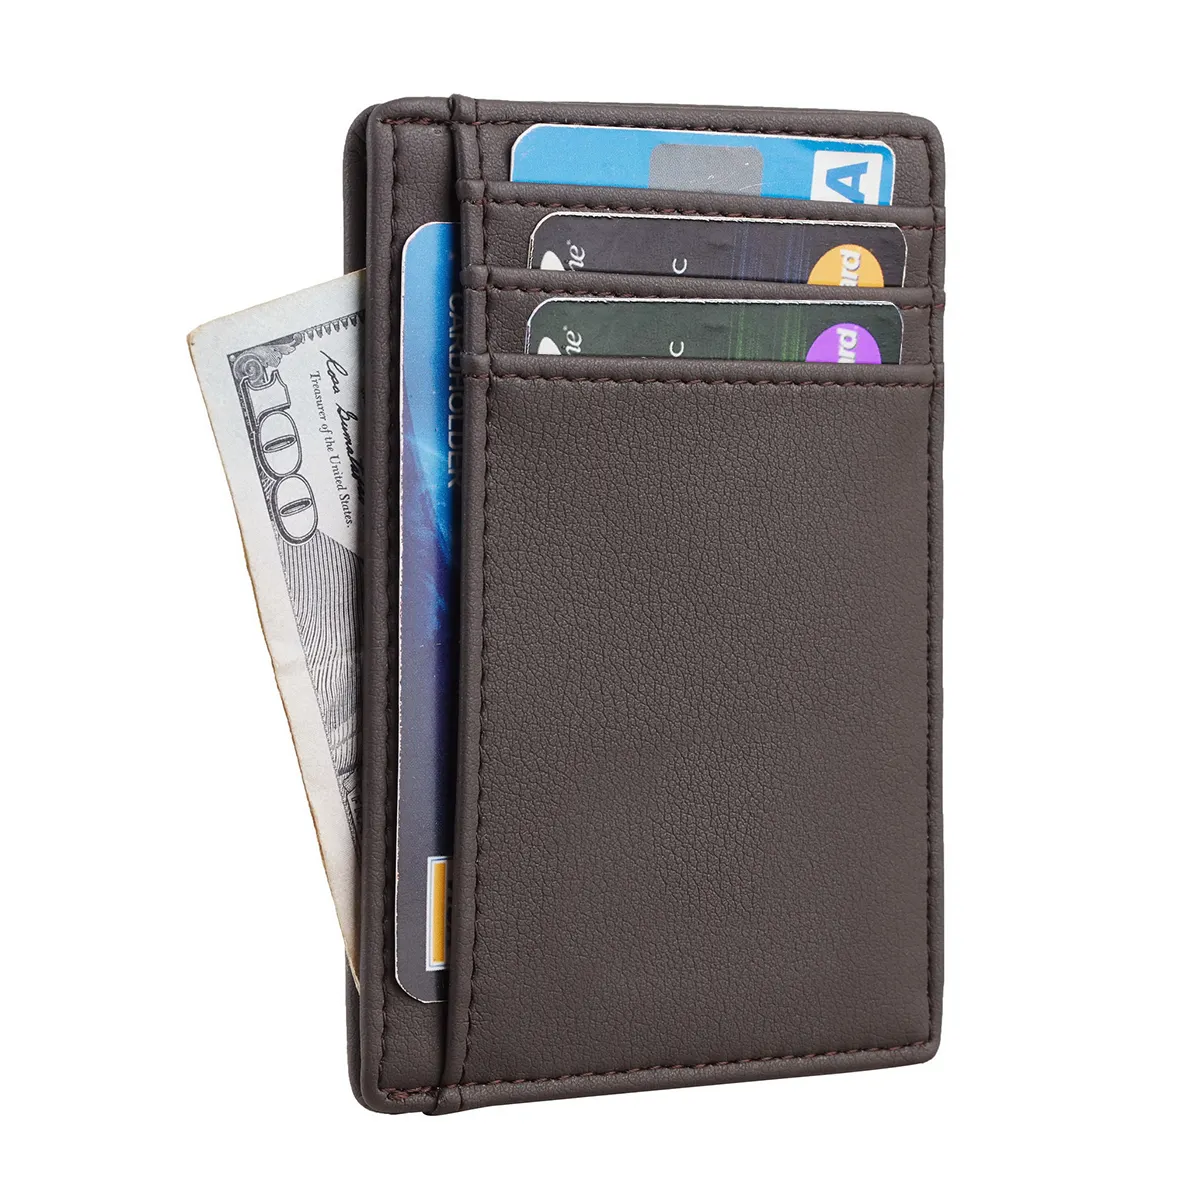 Hot Sale Classic Design Durable Microfiber Leather Slim Card Holder Wallet Rfid Front Pocket Wallet For Man